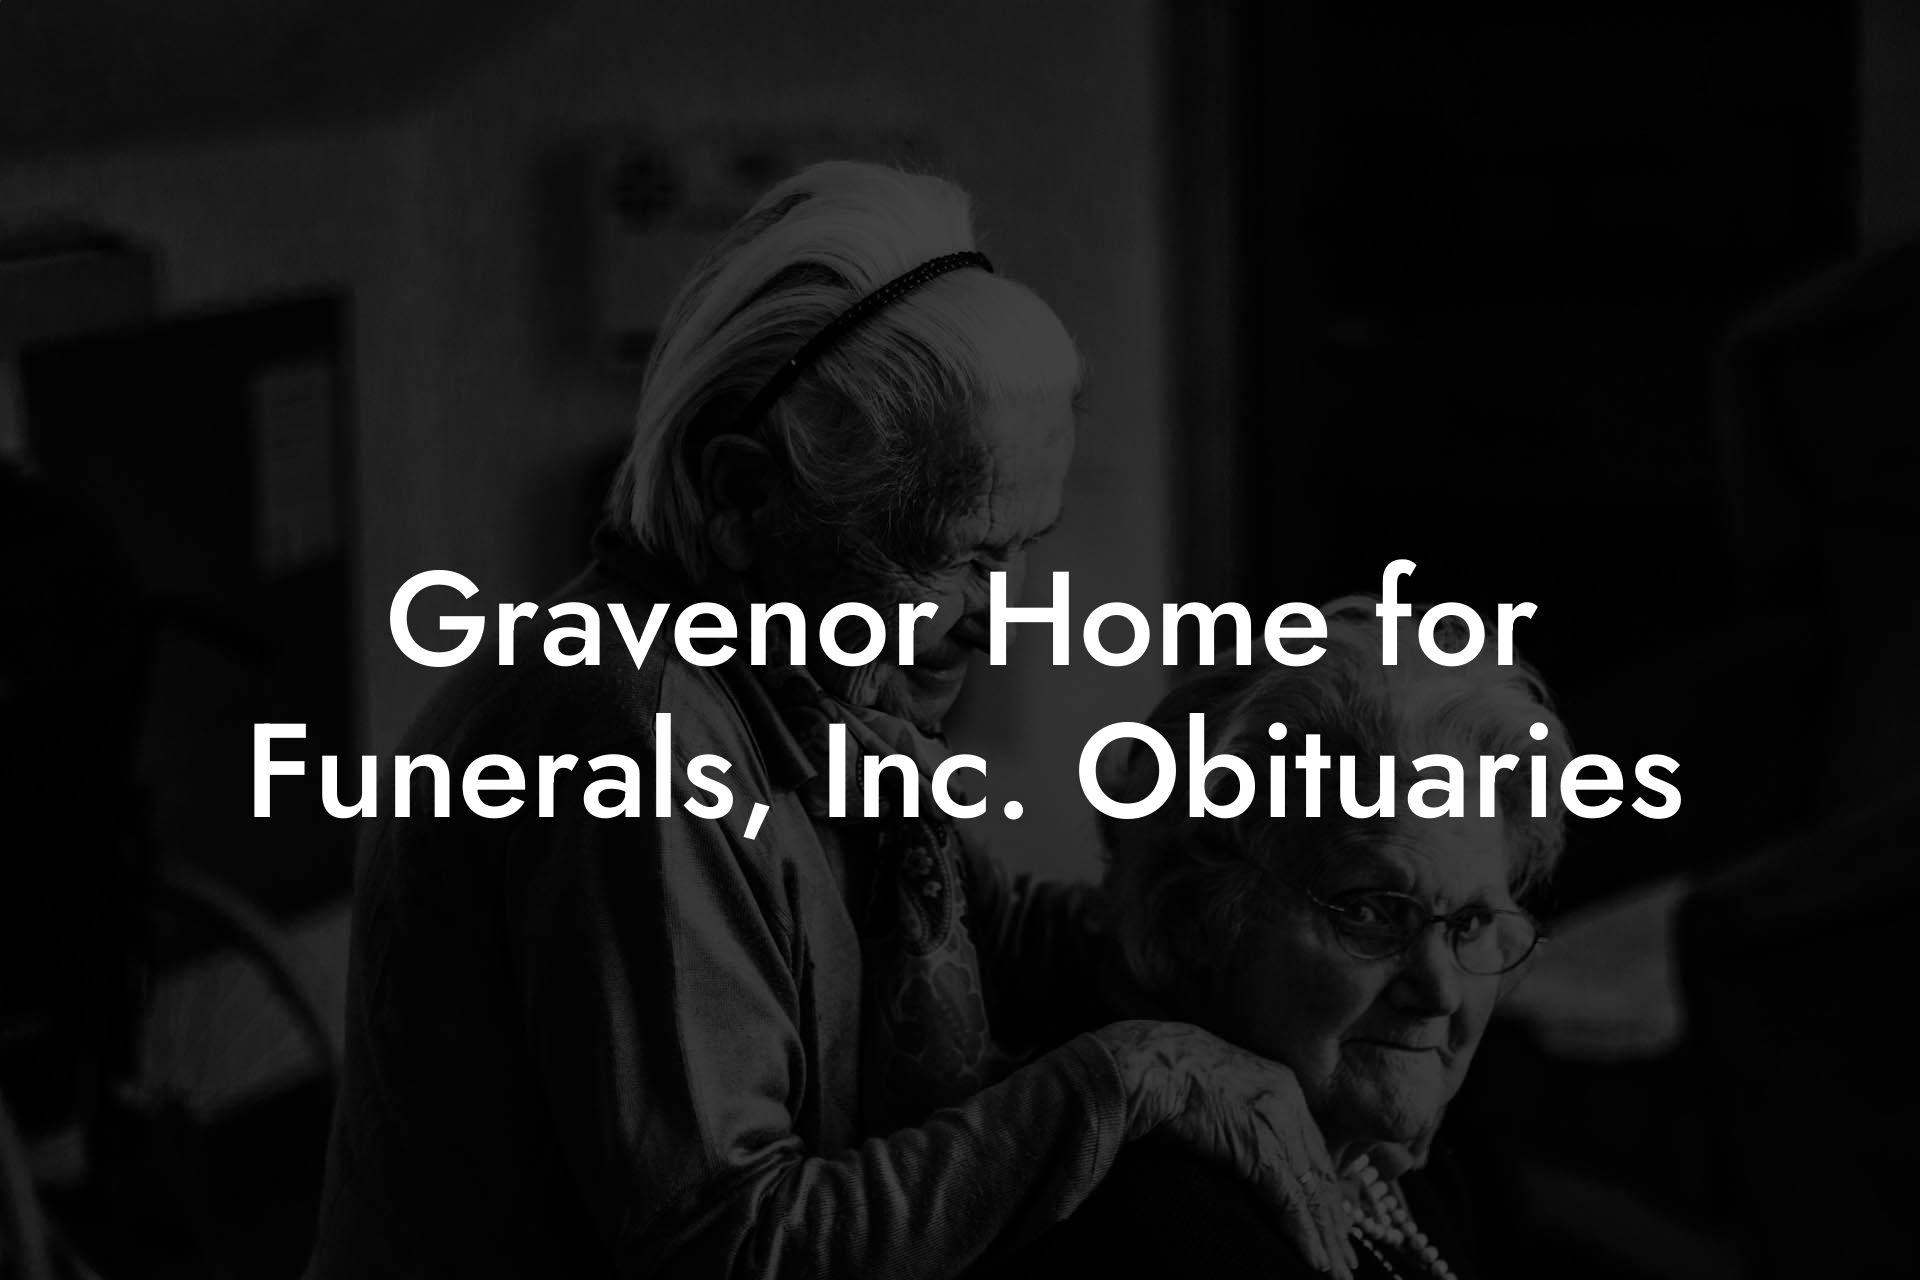 Gravenor Home for Funerals, Inc. Obituaries